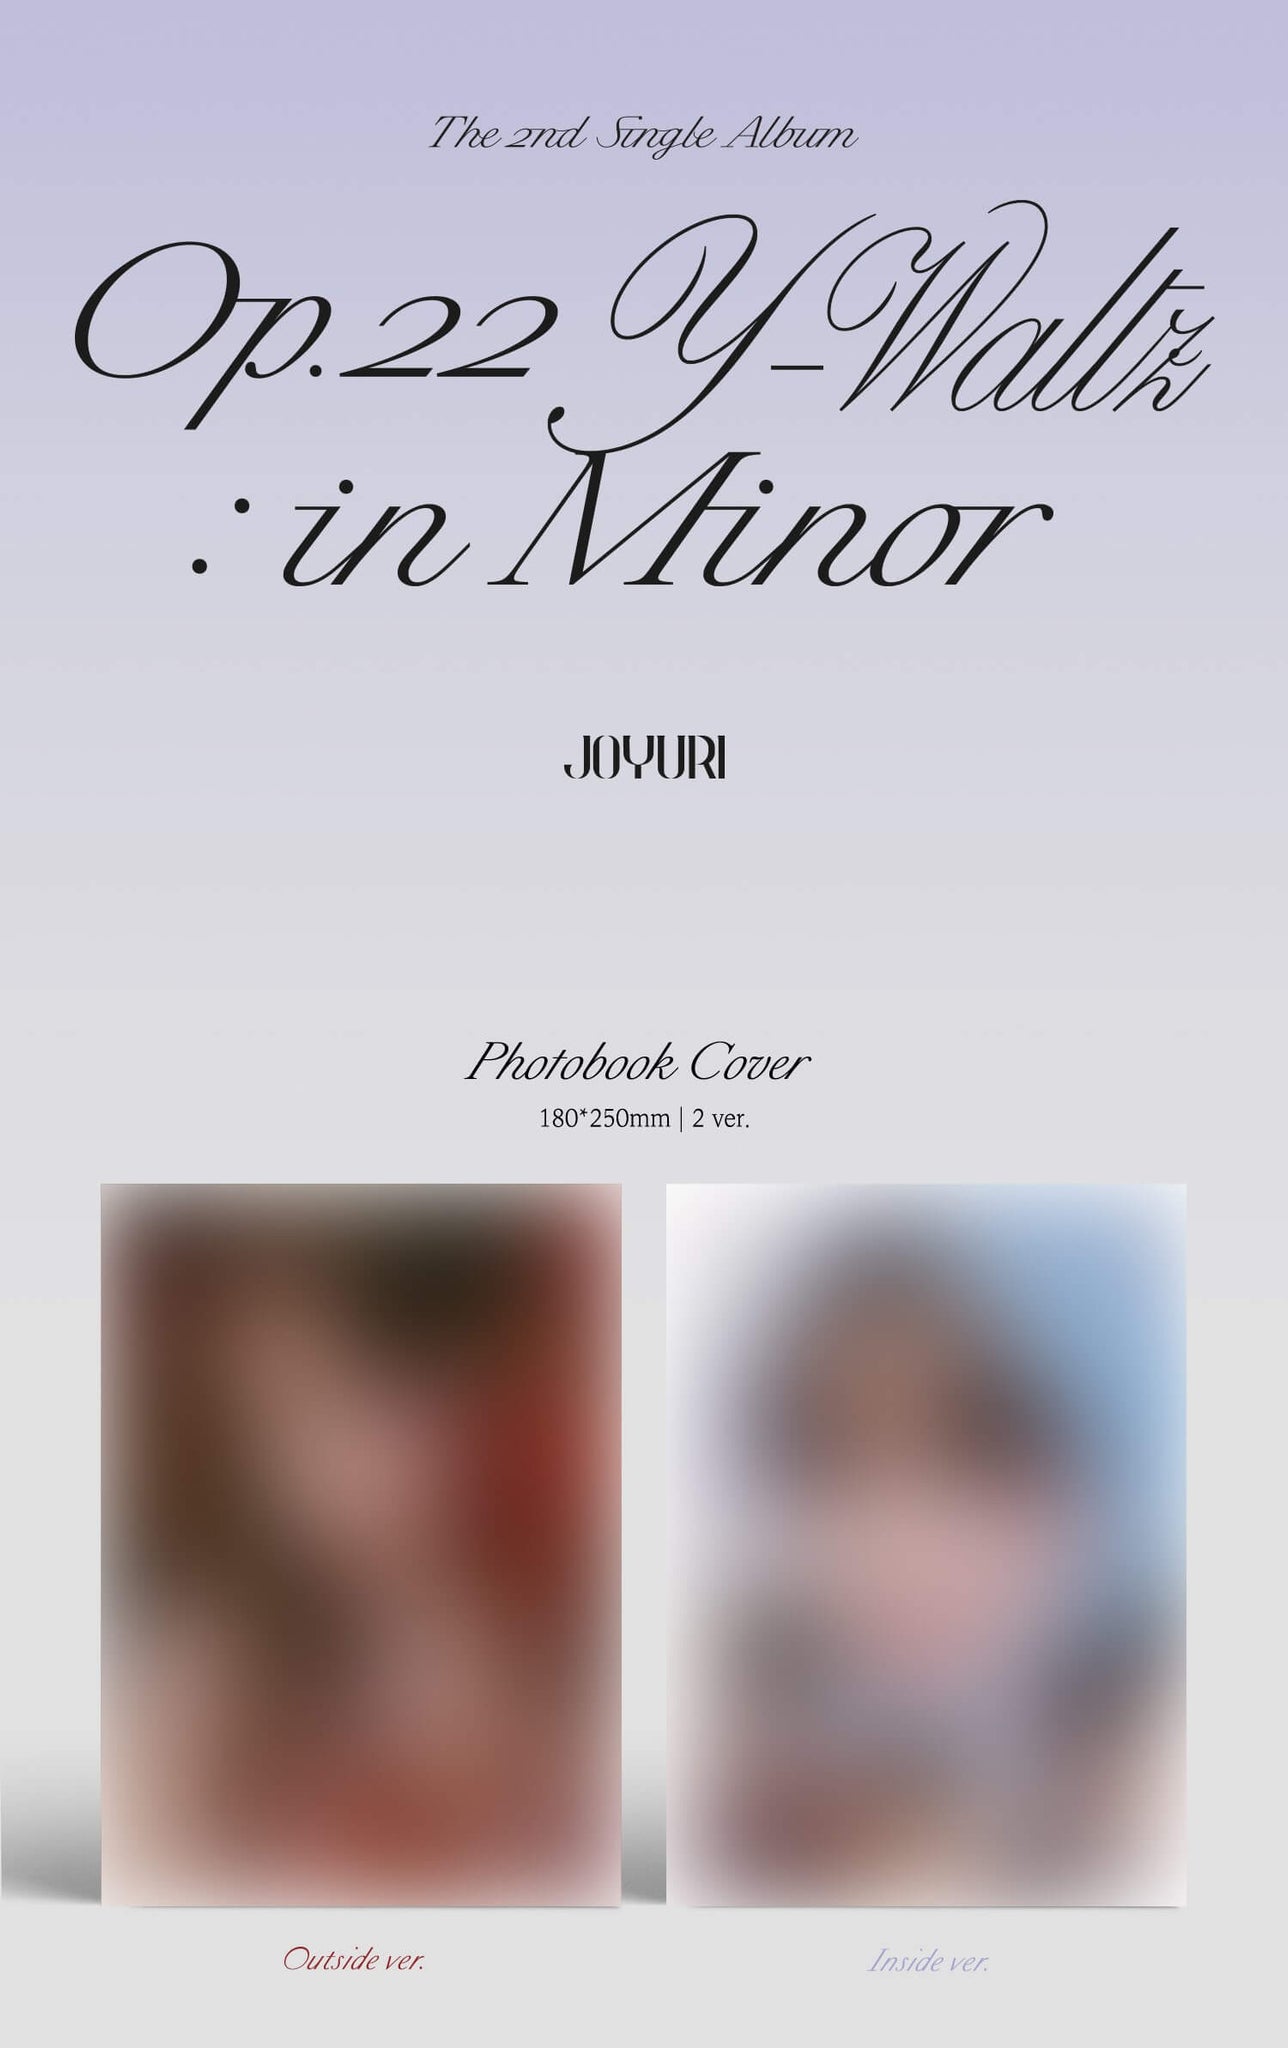 Jo YuRi Op.22 Y-Waltz : in Minor Inclusions Photobook Cover